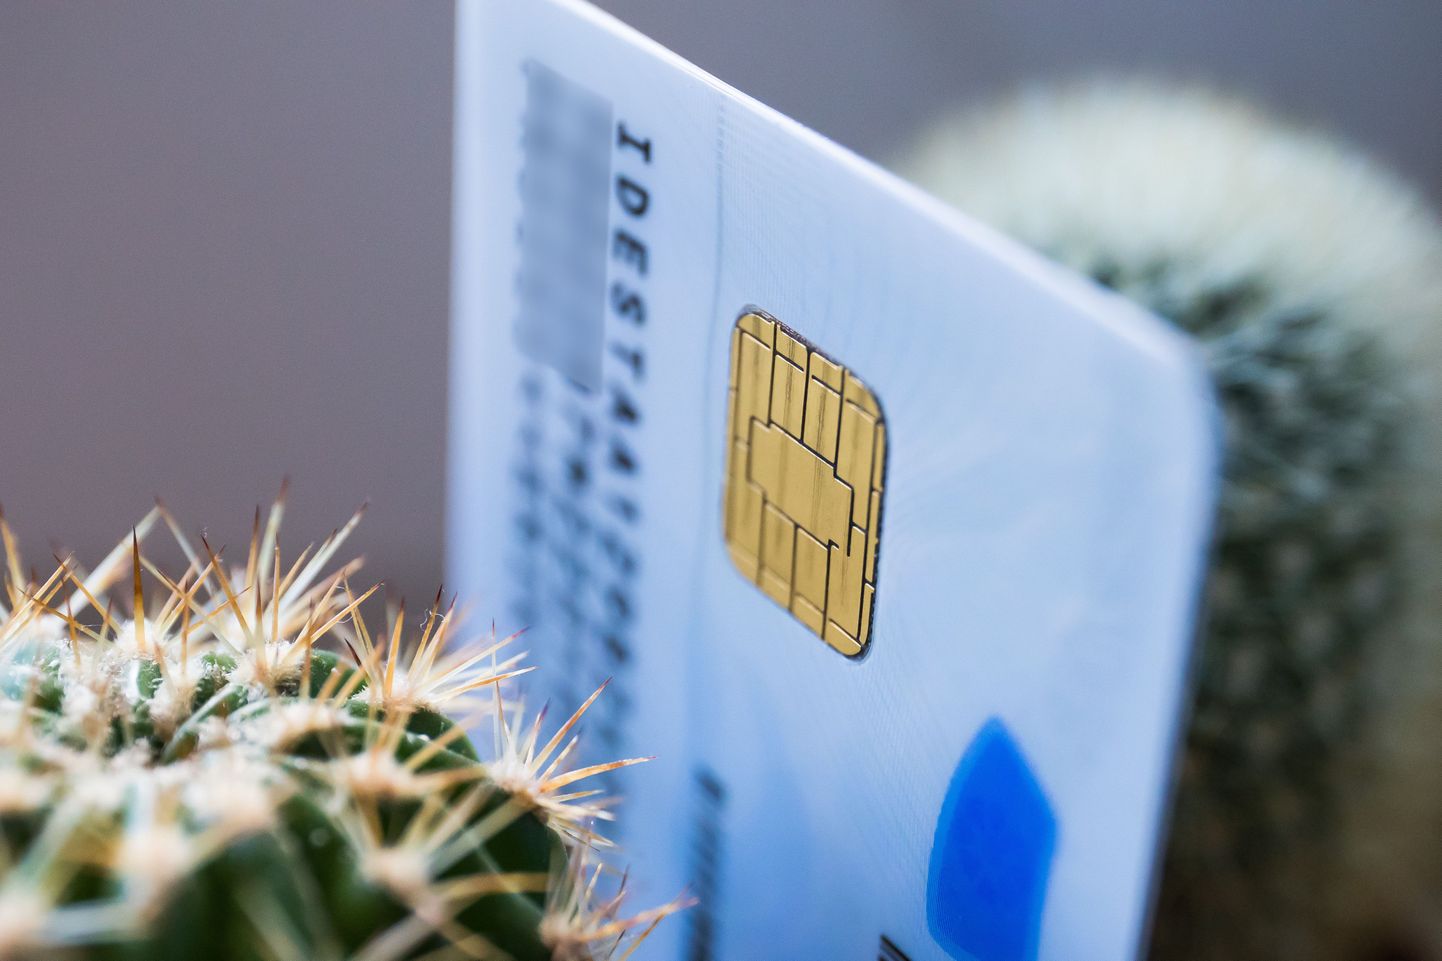 Eesti ID-kaarti on tabanud tavapärasest suurem turvanõrkus, mistõttu peavad kiirkorras kaardi sertifikaadid uuendama need, kes kasutavad tihedalt e-teenuseid ja kasutavad seejuures ID-kaarti peamise autentimisvahendina.